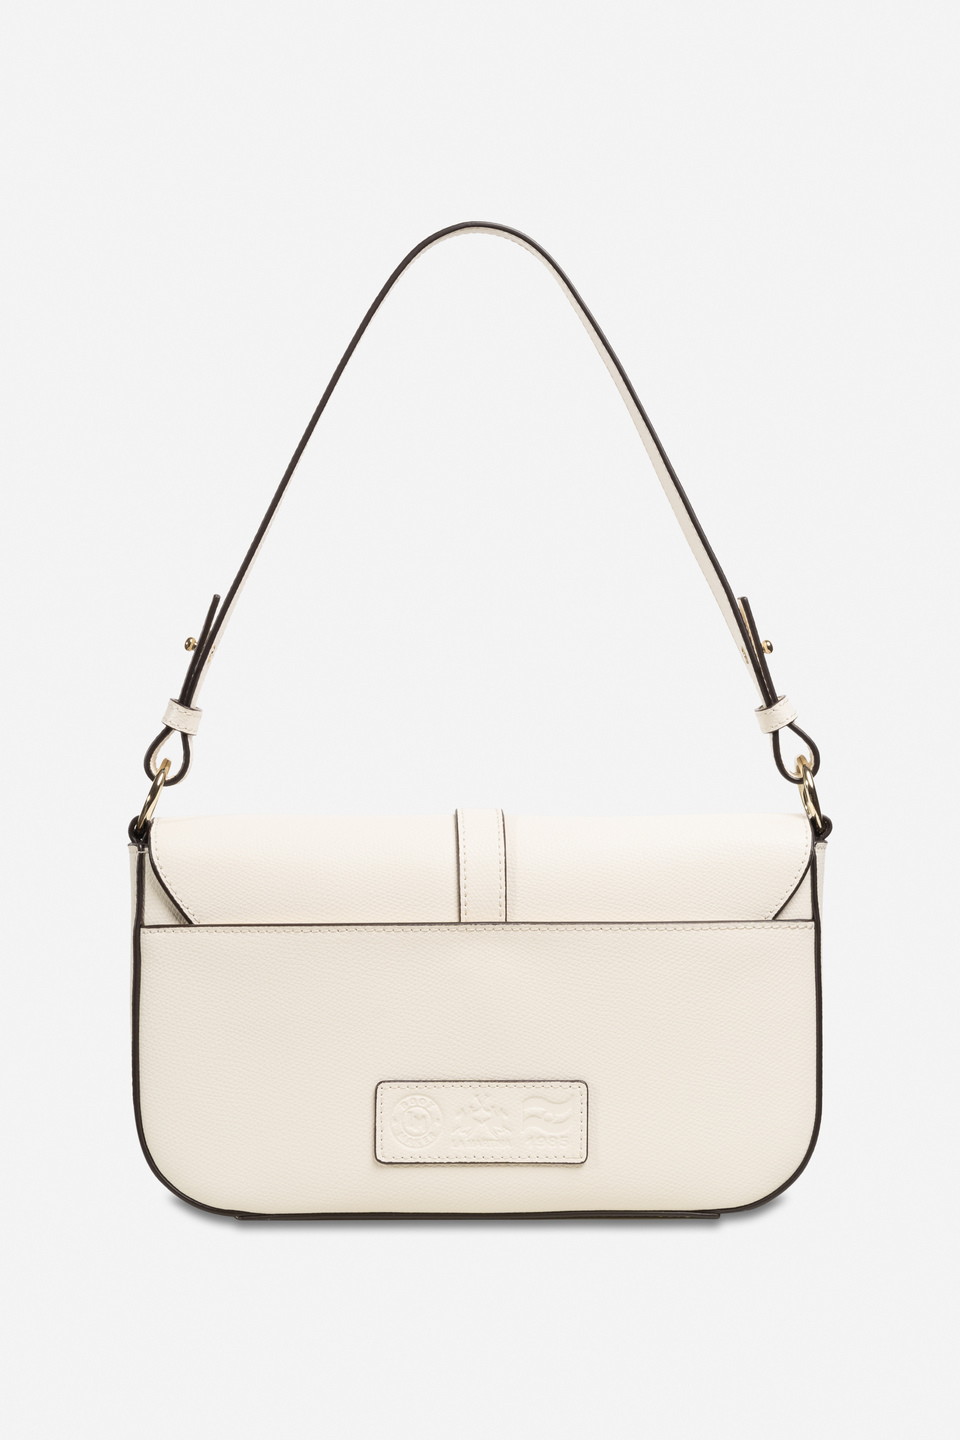 S&F Leather Purse Designer Crossbody Shoulder Bag Travel Satchel Women  Handbag Ipad Bag – Online Leather Bag Store